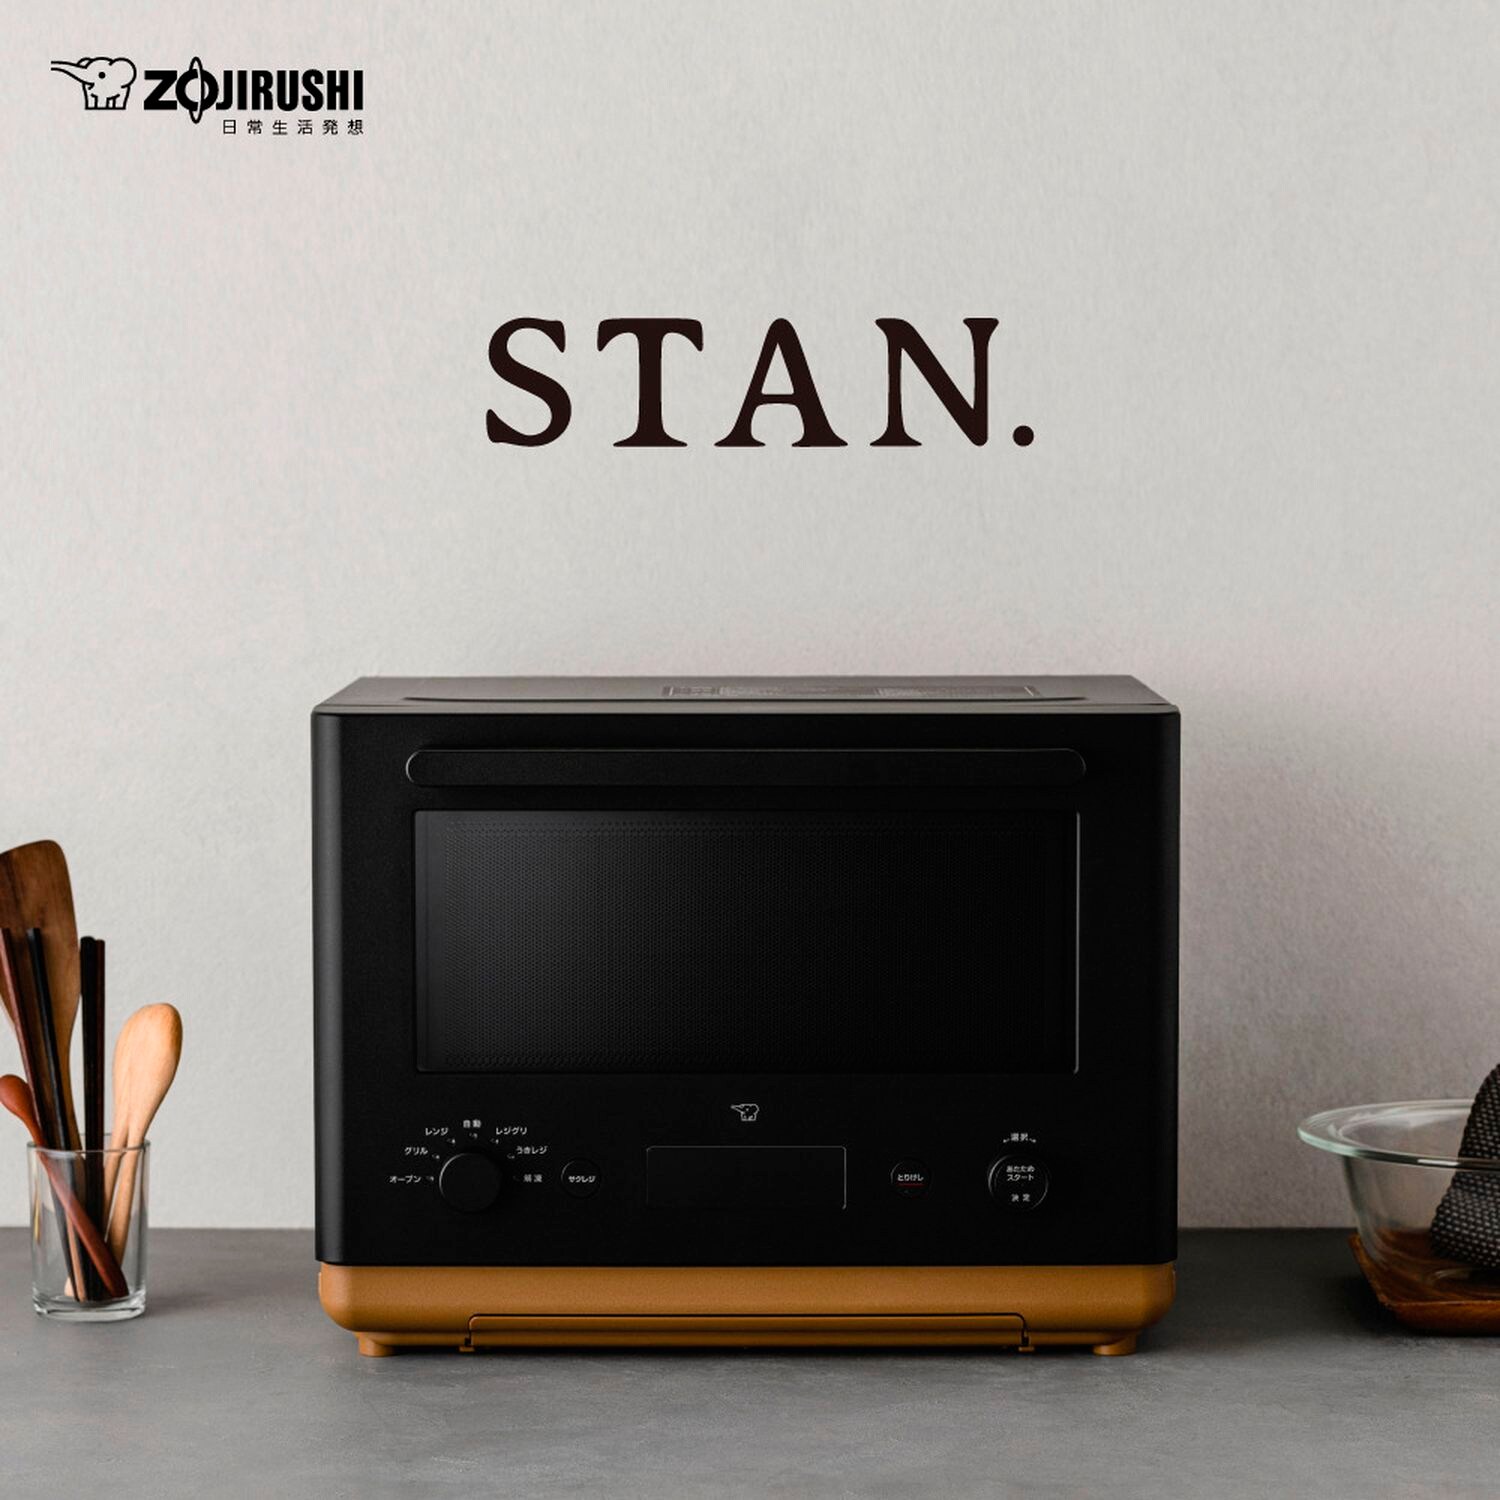 【スタン/STAN.】STAN. オーブンレンジ